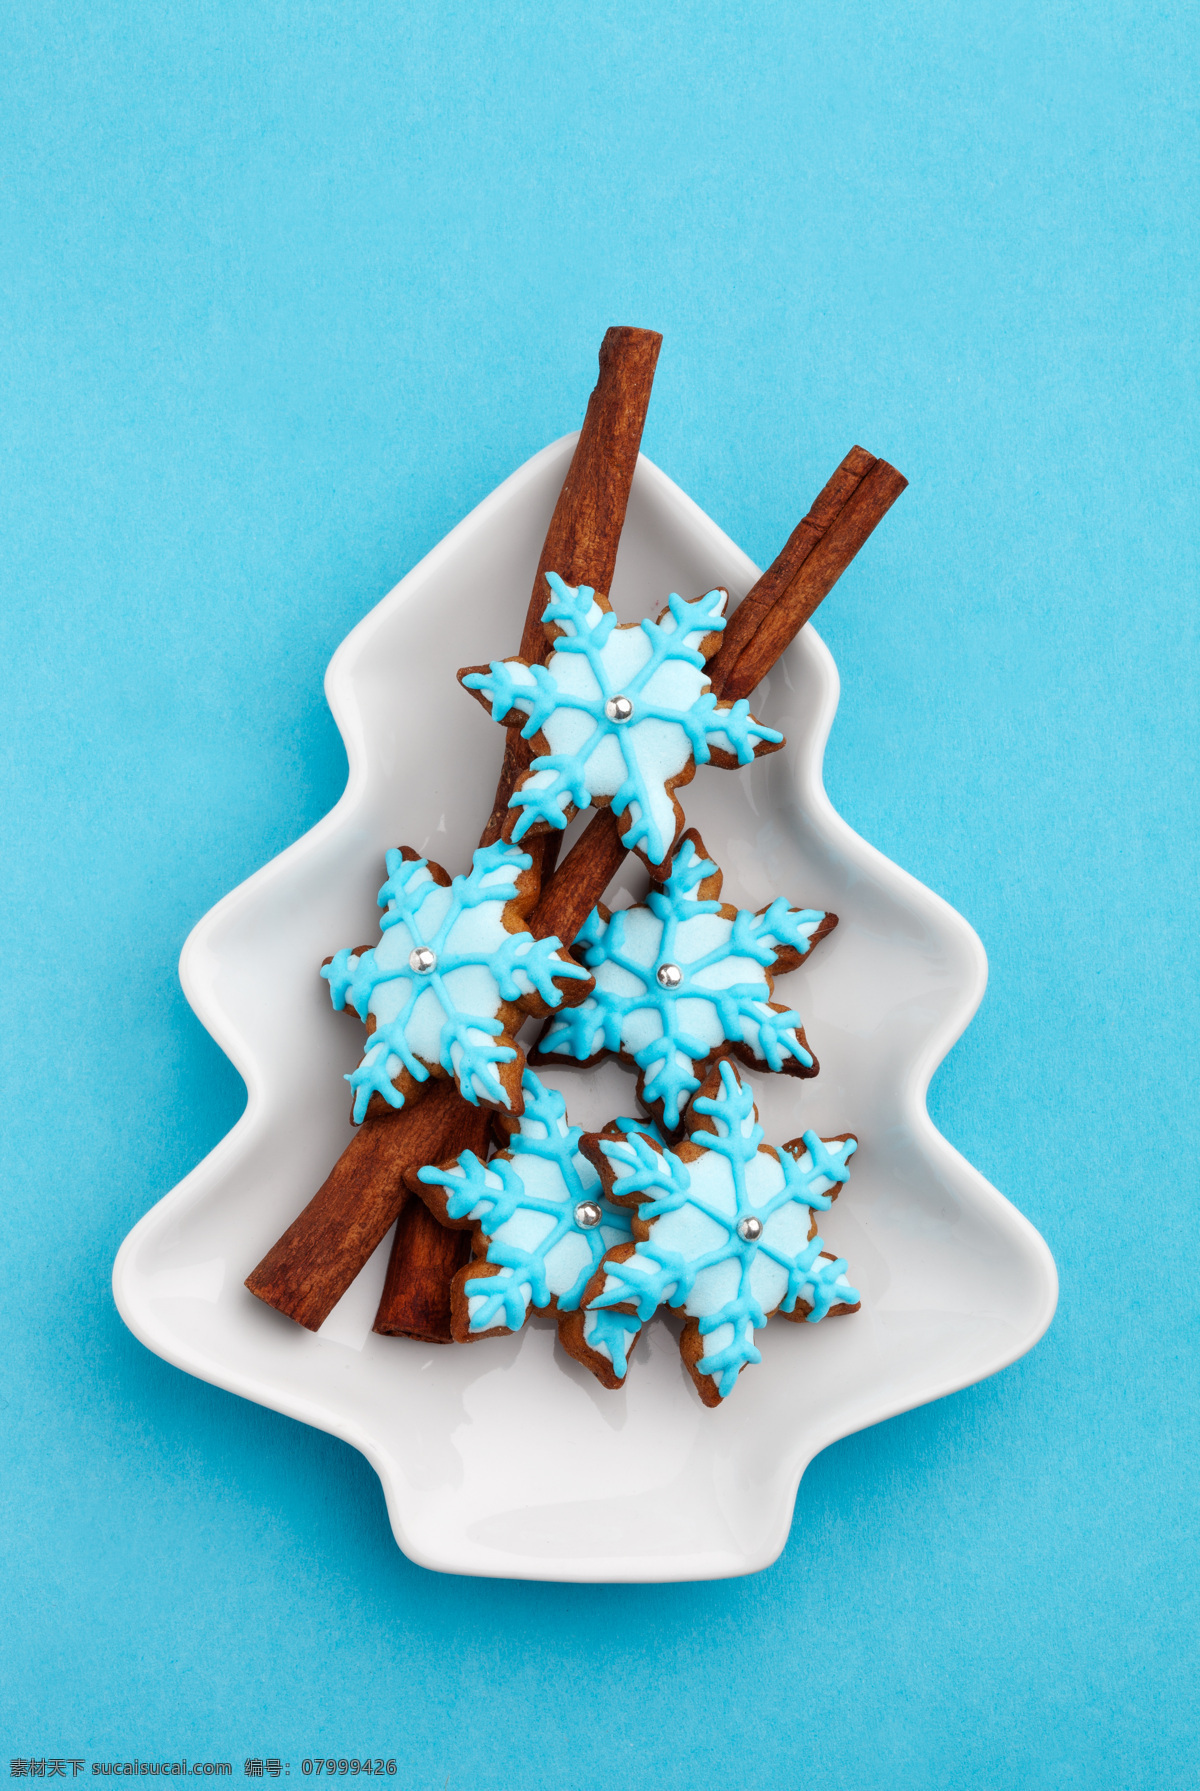 圣诞 食物 高清 点心 甜品 饼干 雪花食物 圣诞食物 餐饮美食 西餐美食 外国美食 青色 天蓝色